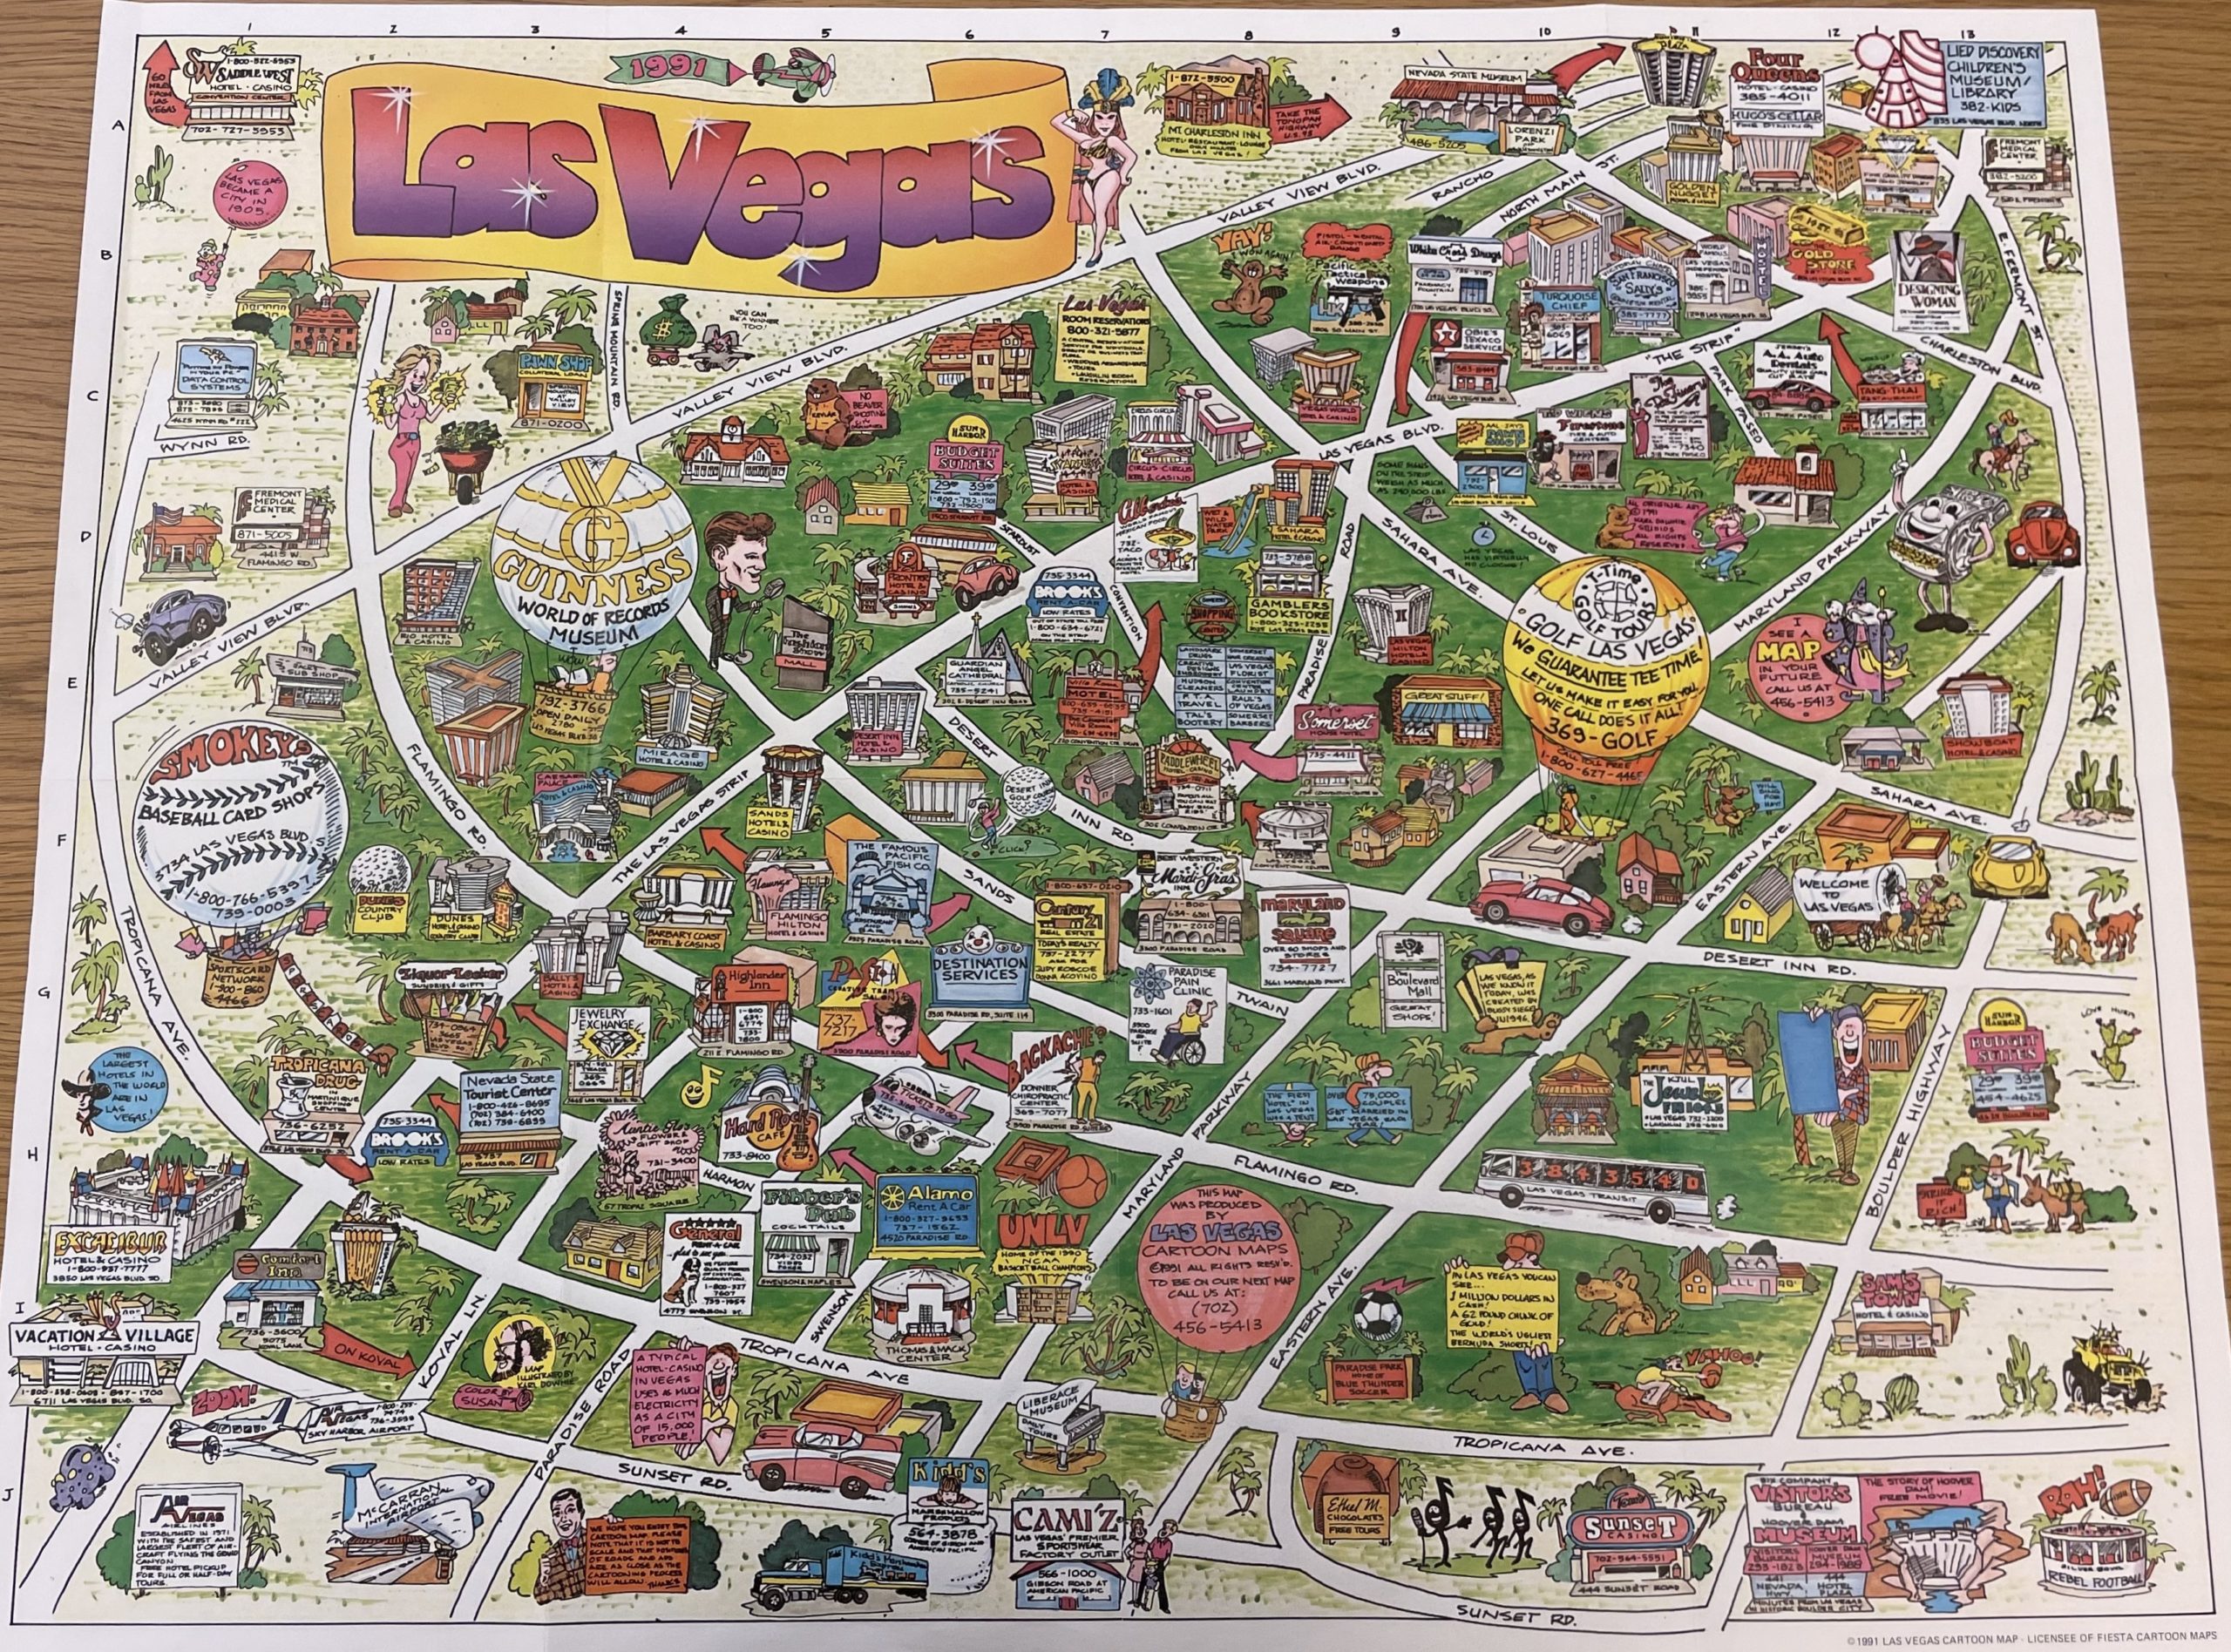 1991 Cartoon Map of Las Vegas, Nevada State Museum